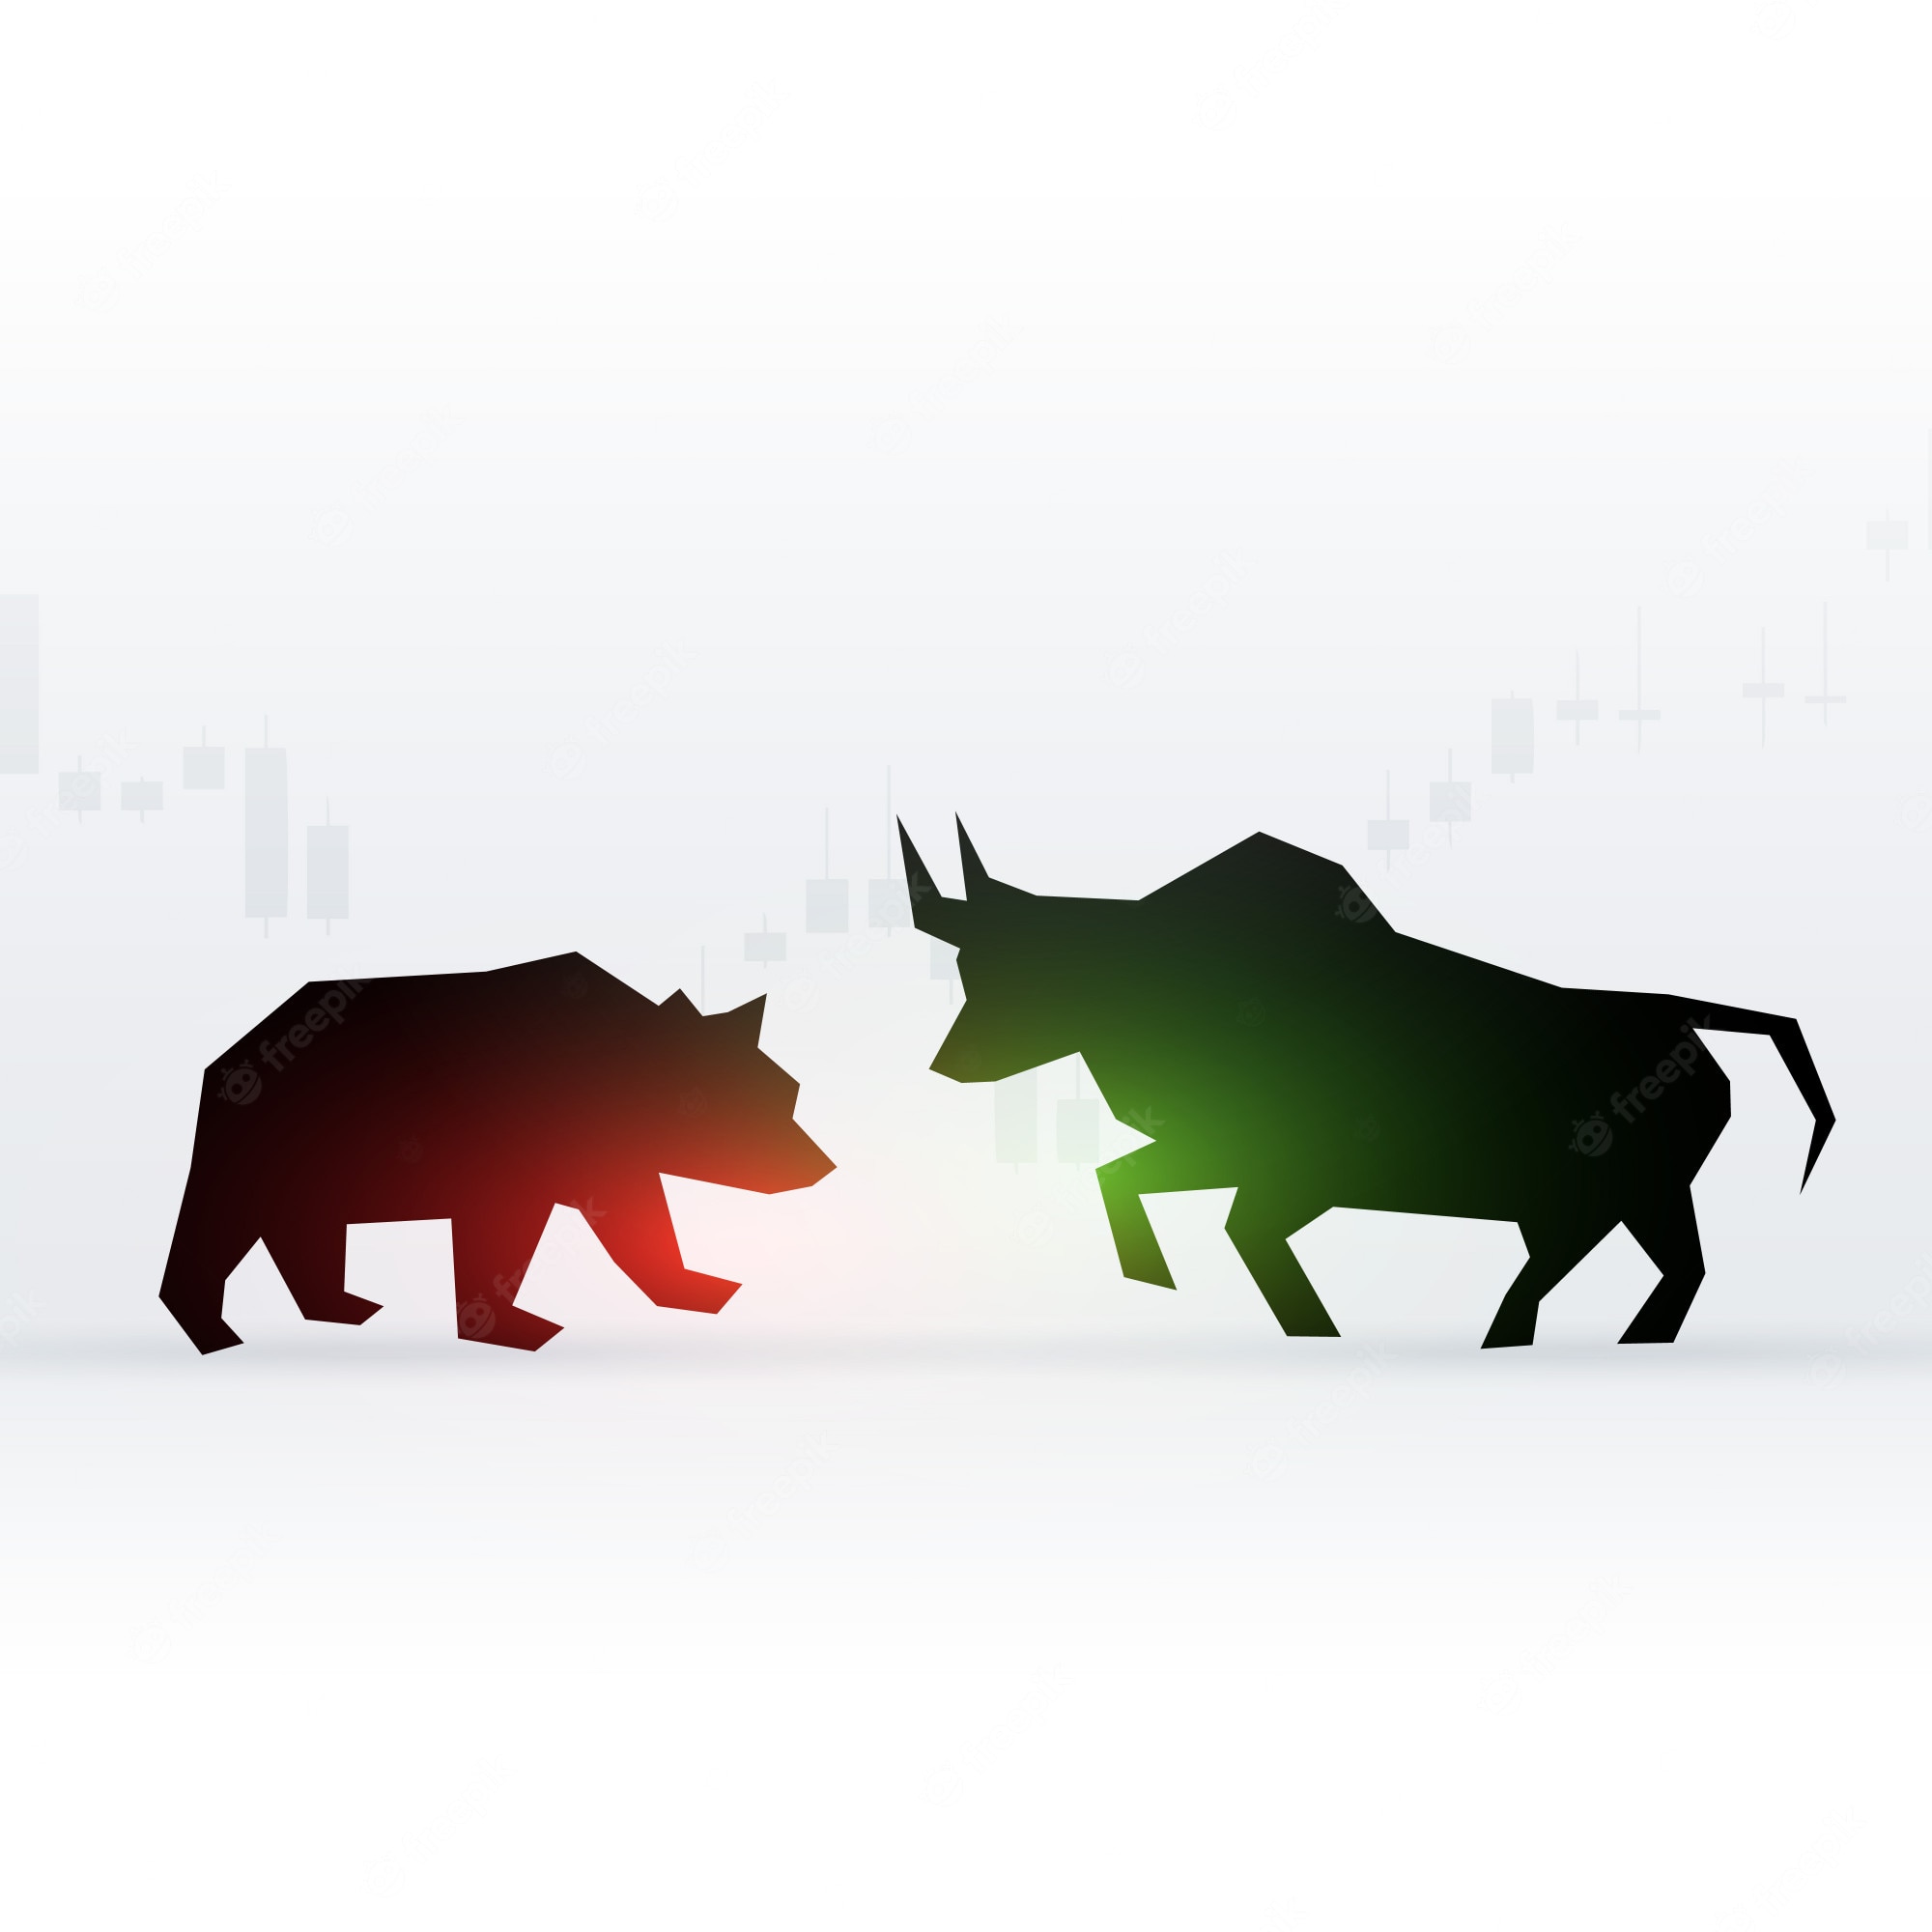 Bull vs. Bear Market Definitions